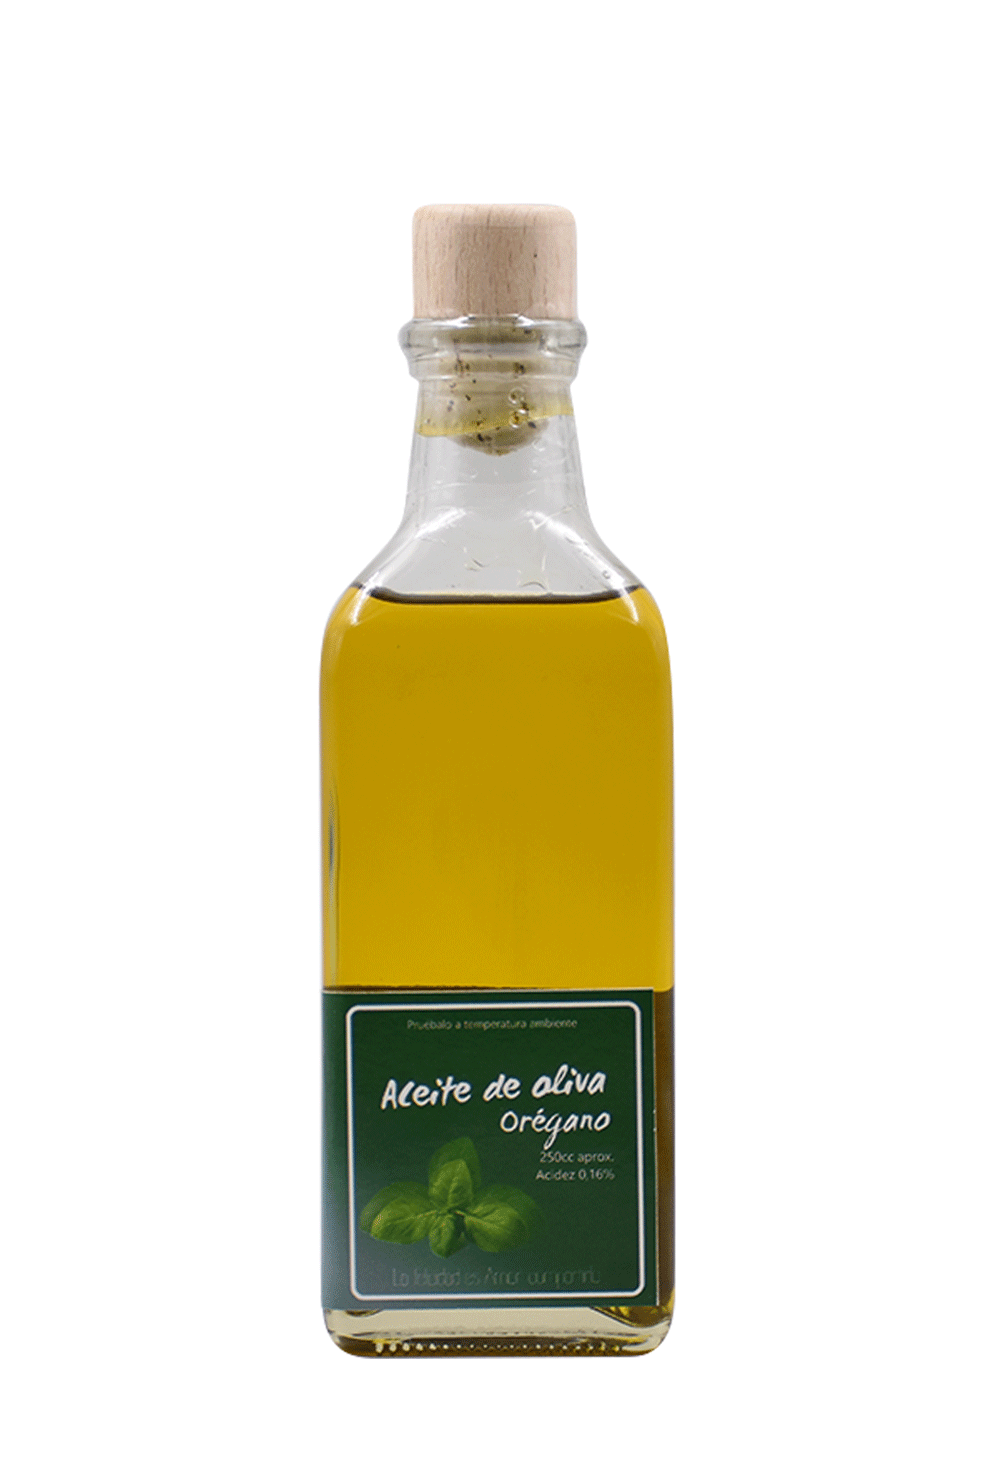 Aceite de oliva orégano 250cc